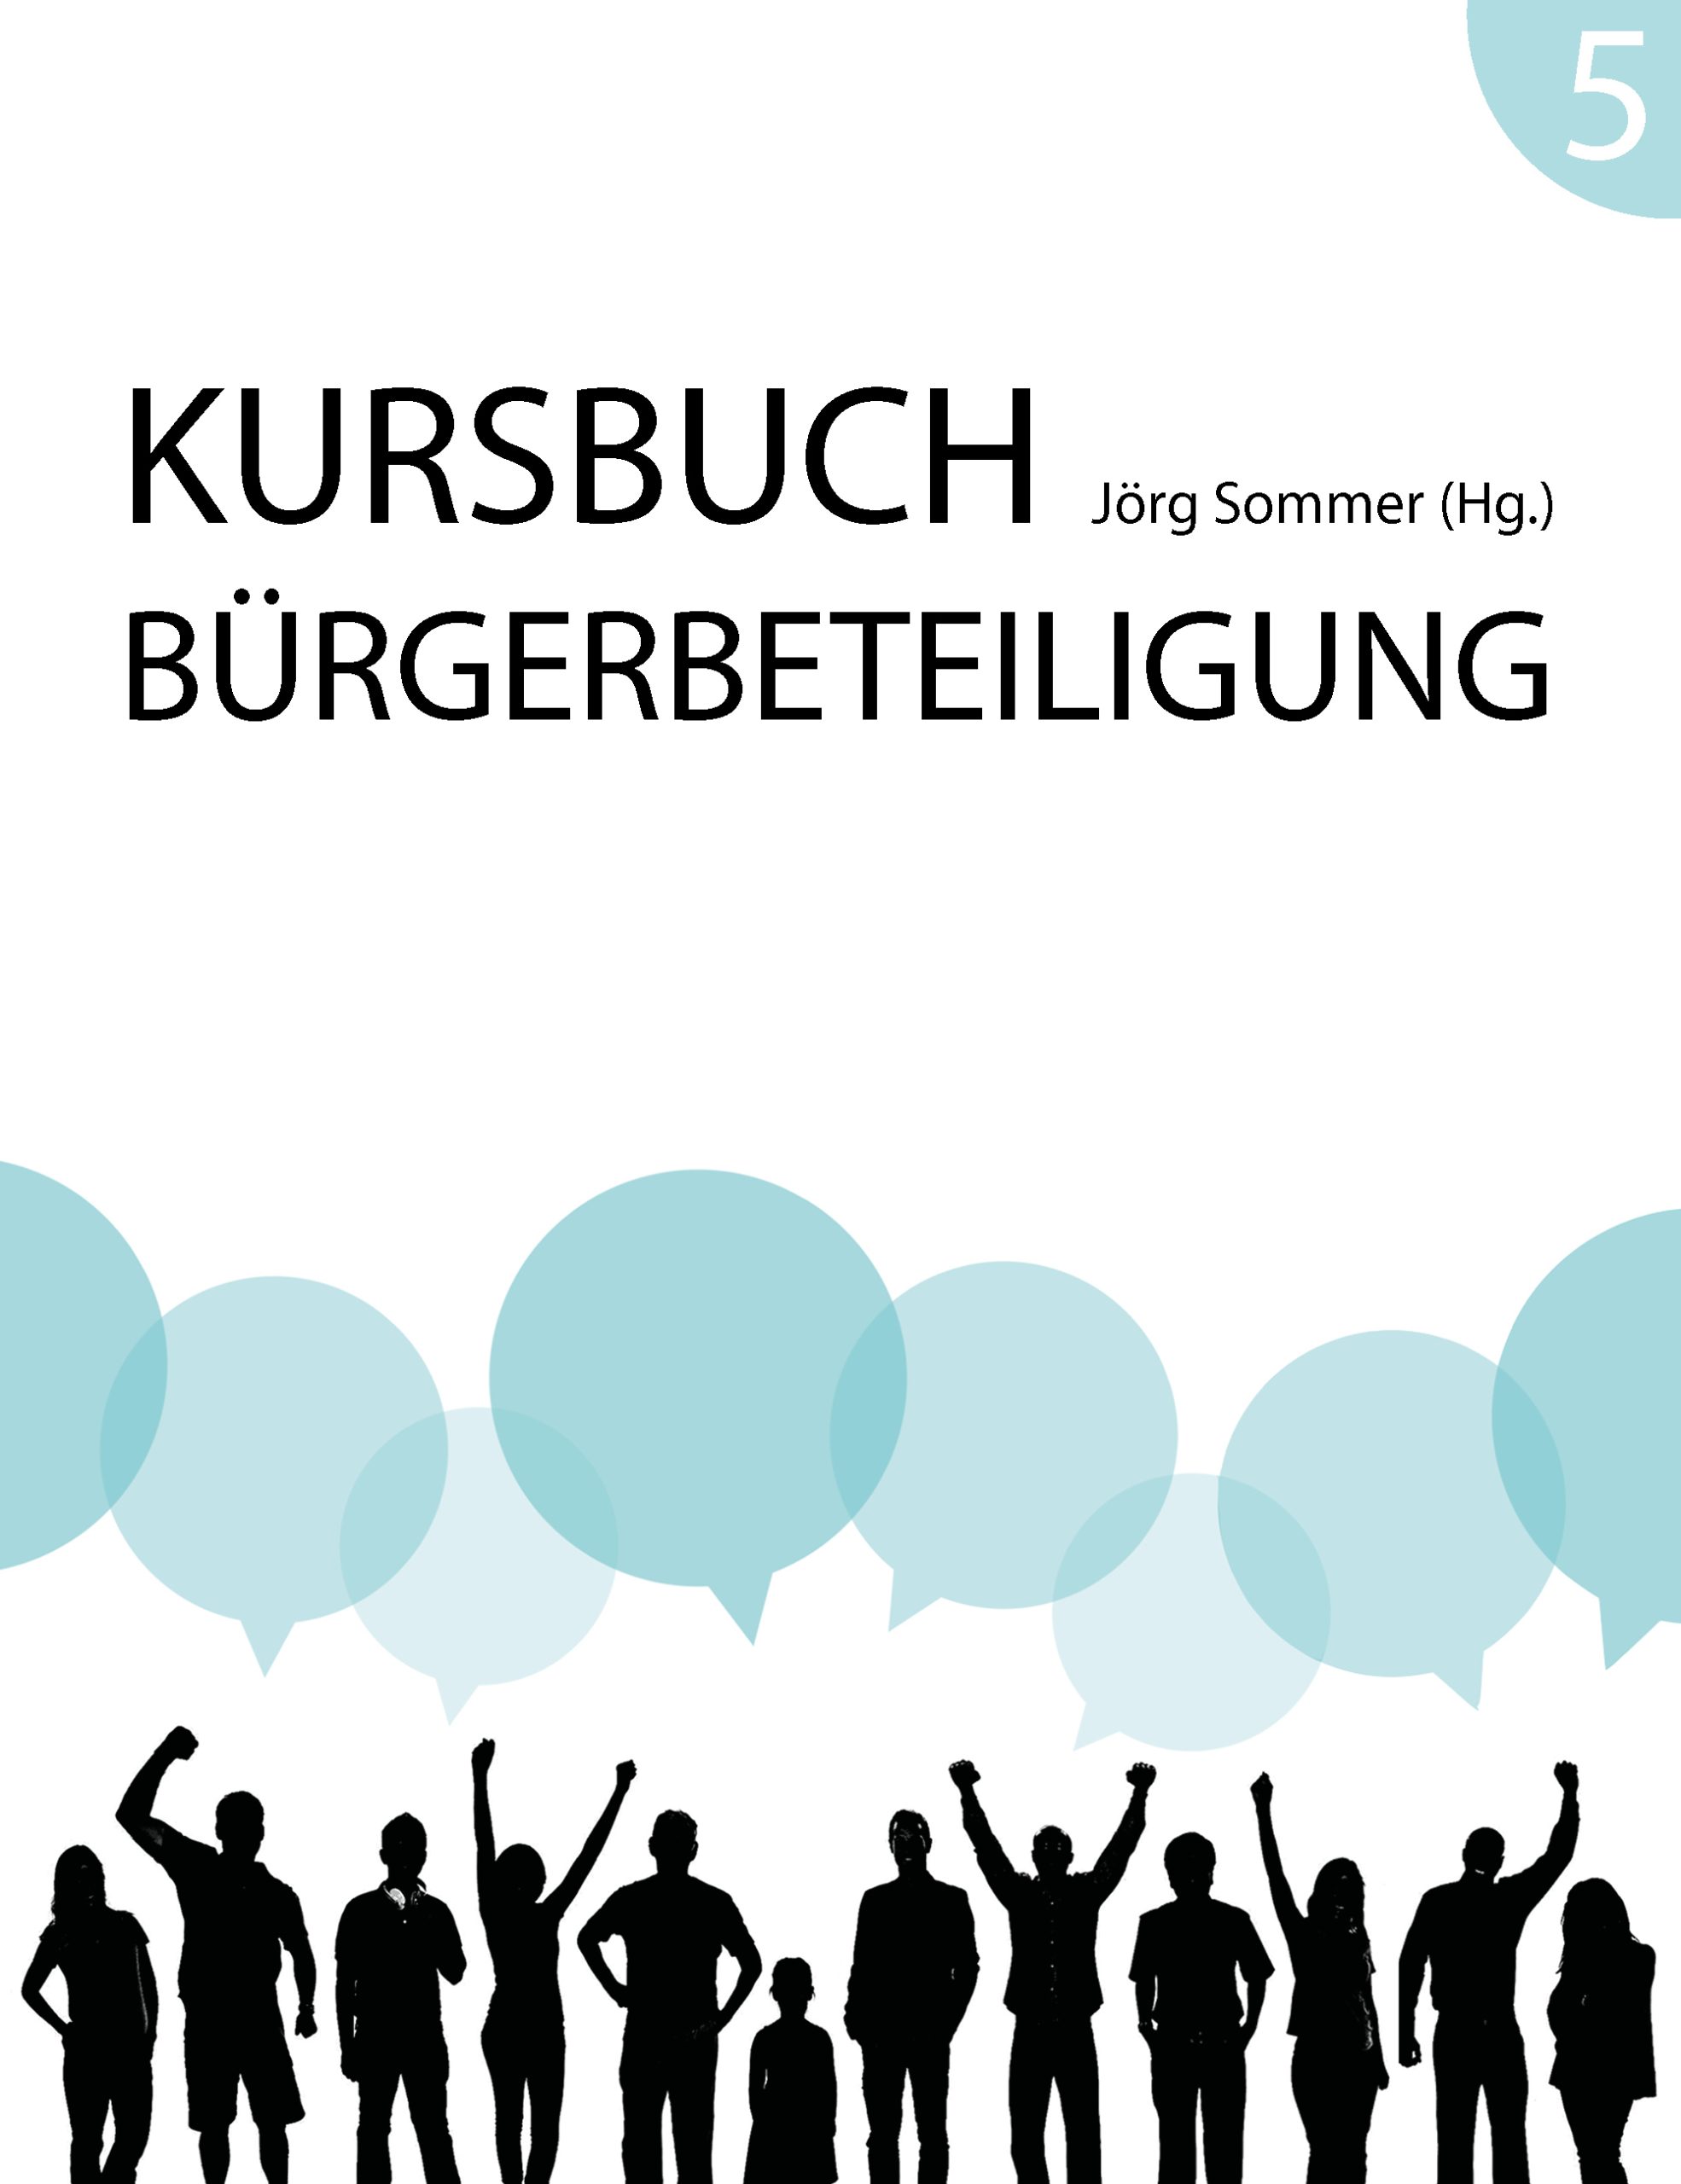 Kursbuch Bürgerbteieligung #5